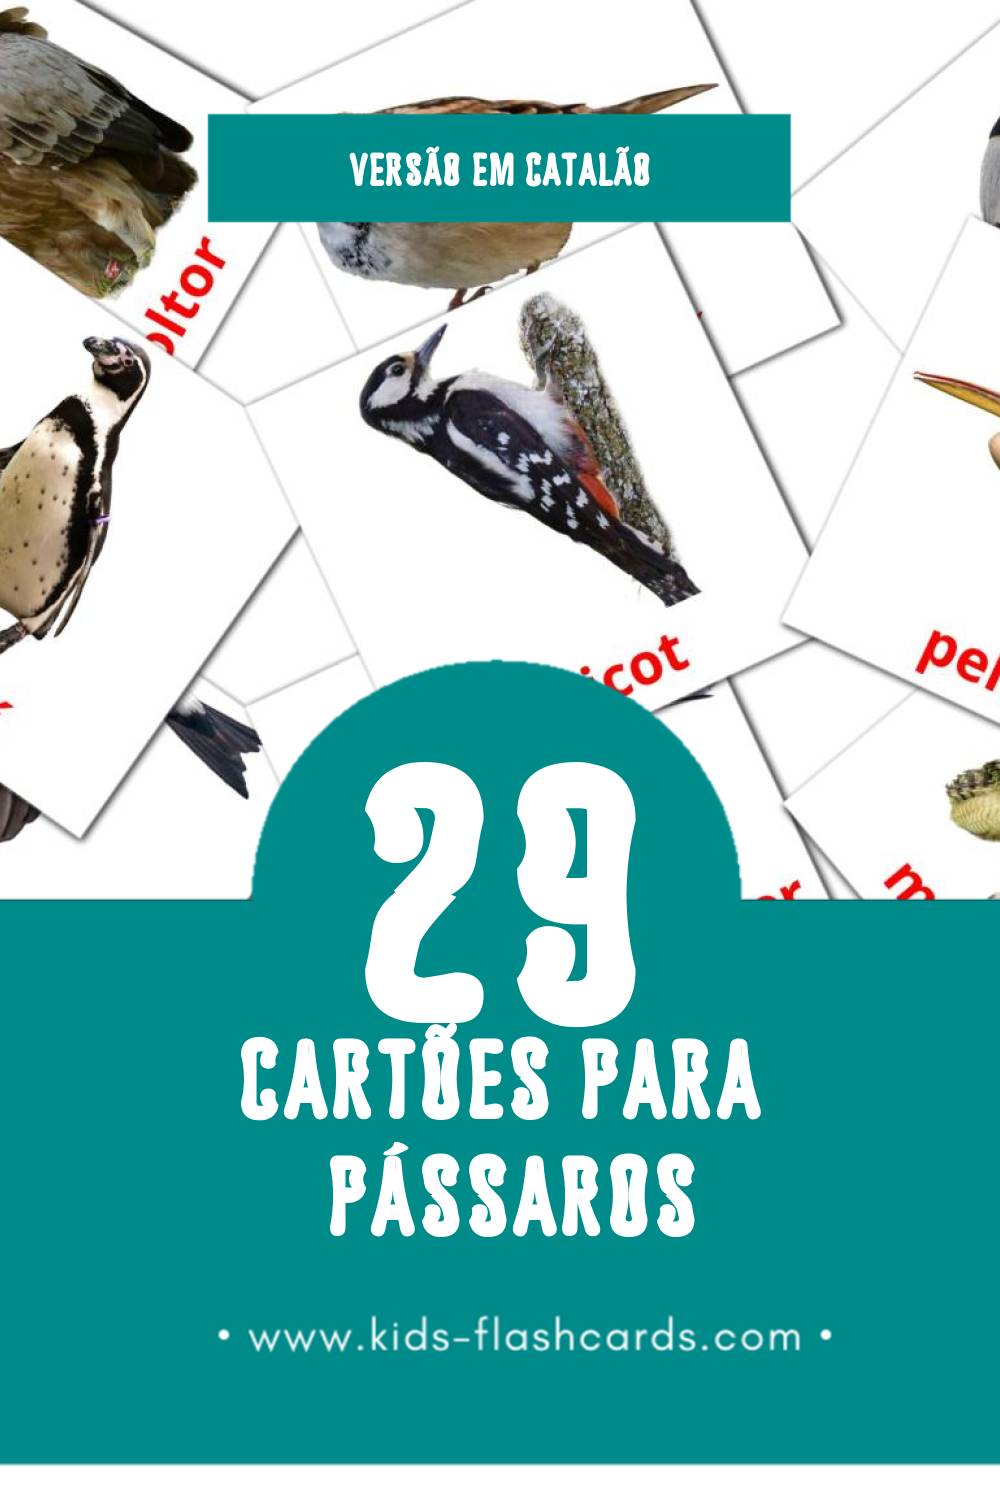 Flashcards de Ocells Visuais para Toddlers (29 cartões em Catalão)